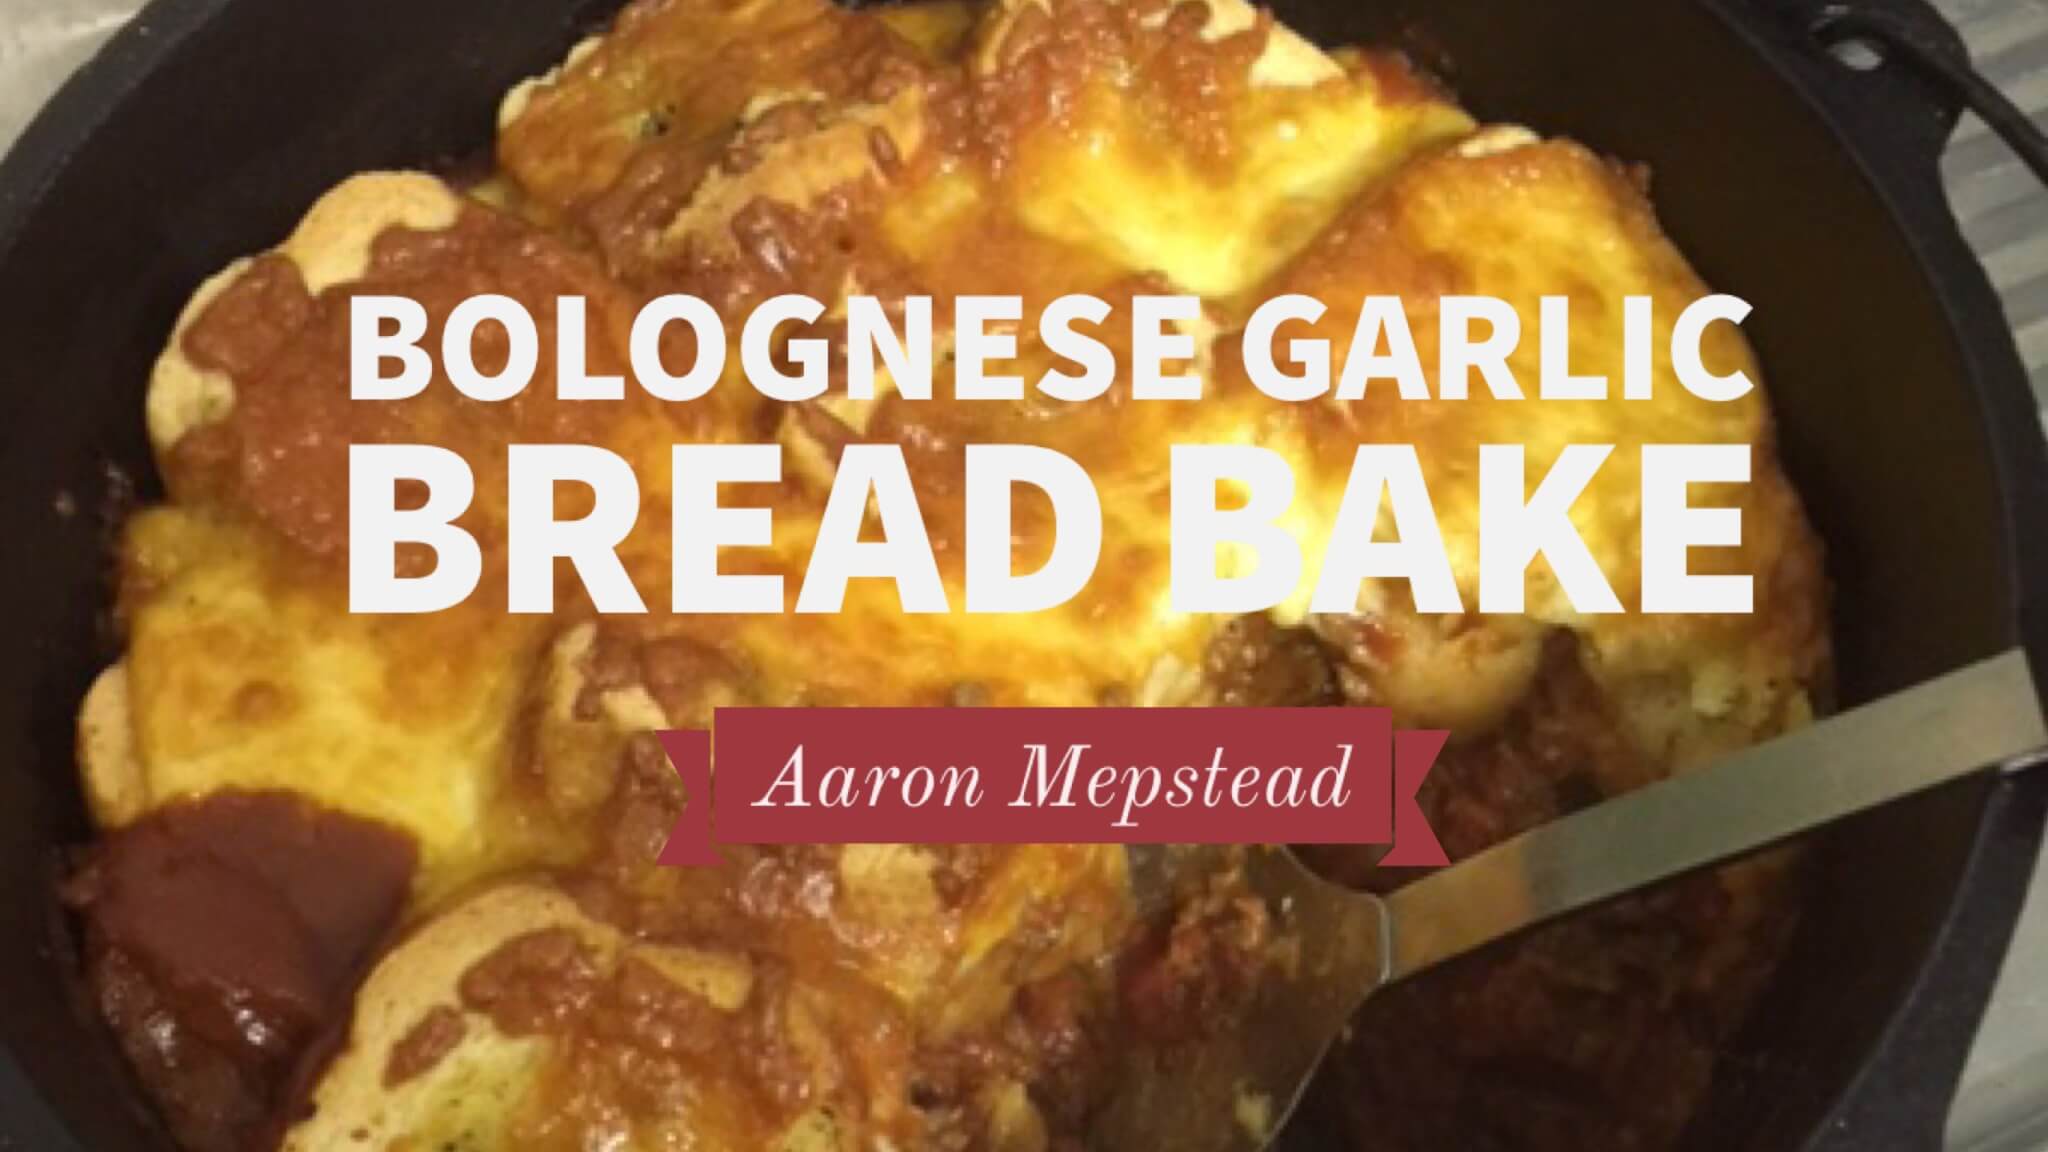 Bolognese Garlic Bread Bake